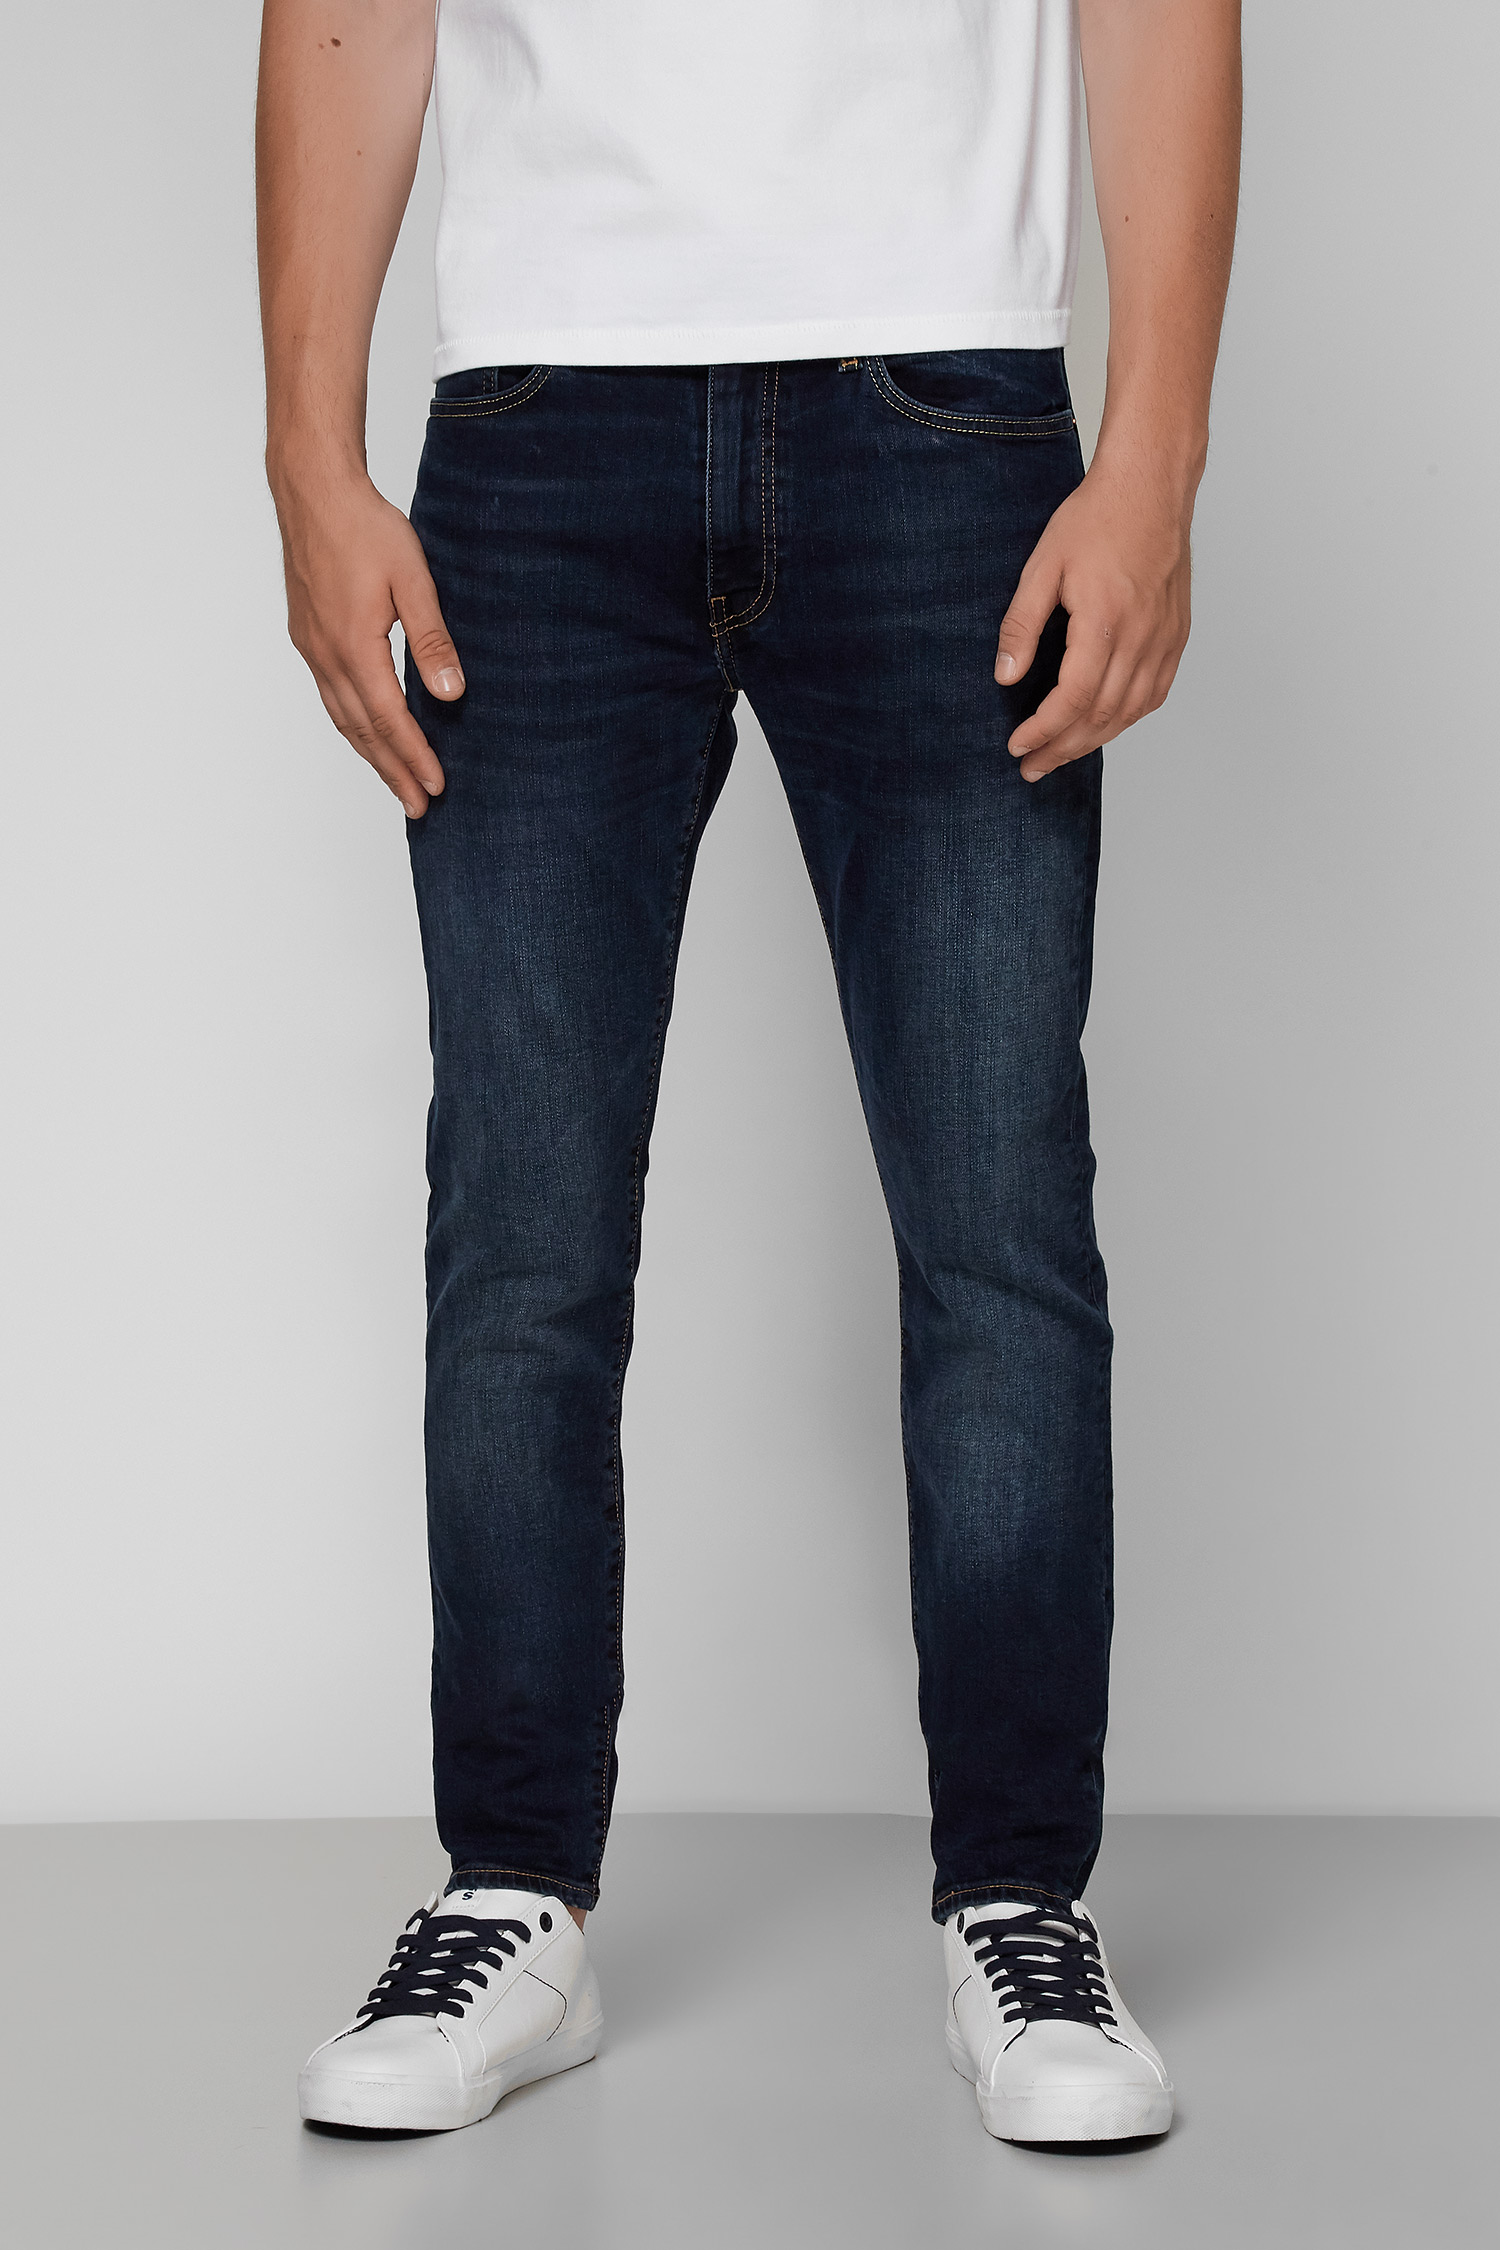 Темно-синие джинсы Levi's Flex для парней Levi’s® 28833;0653